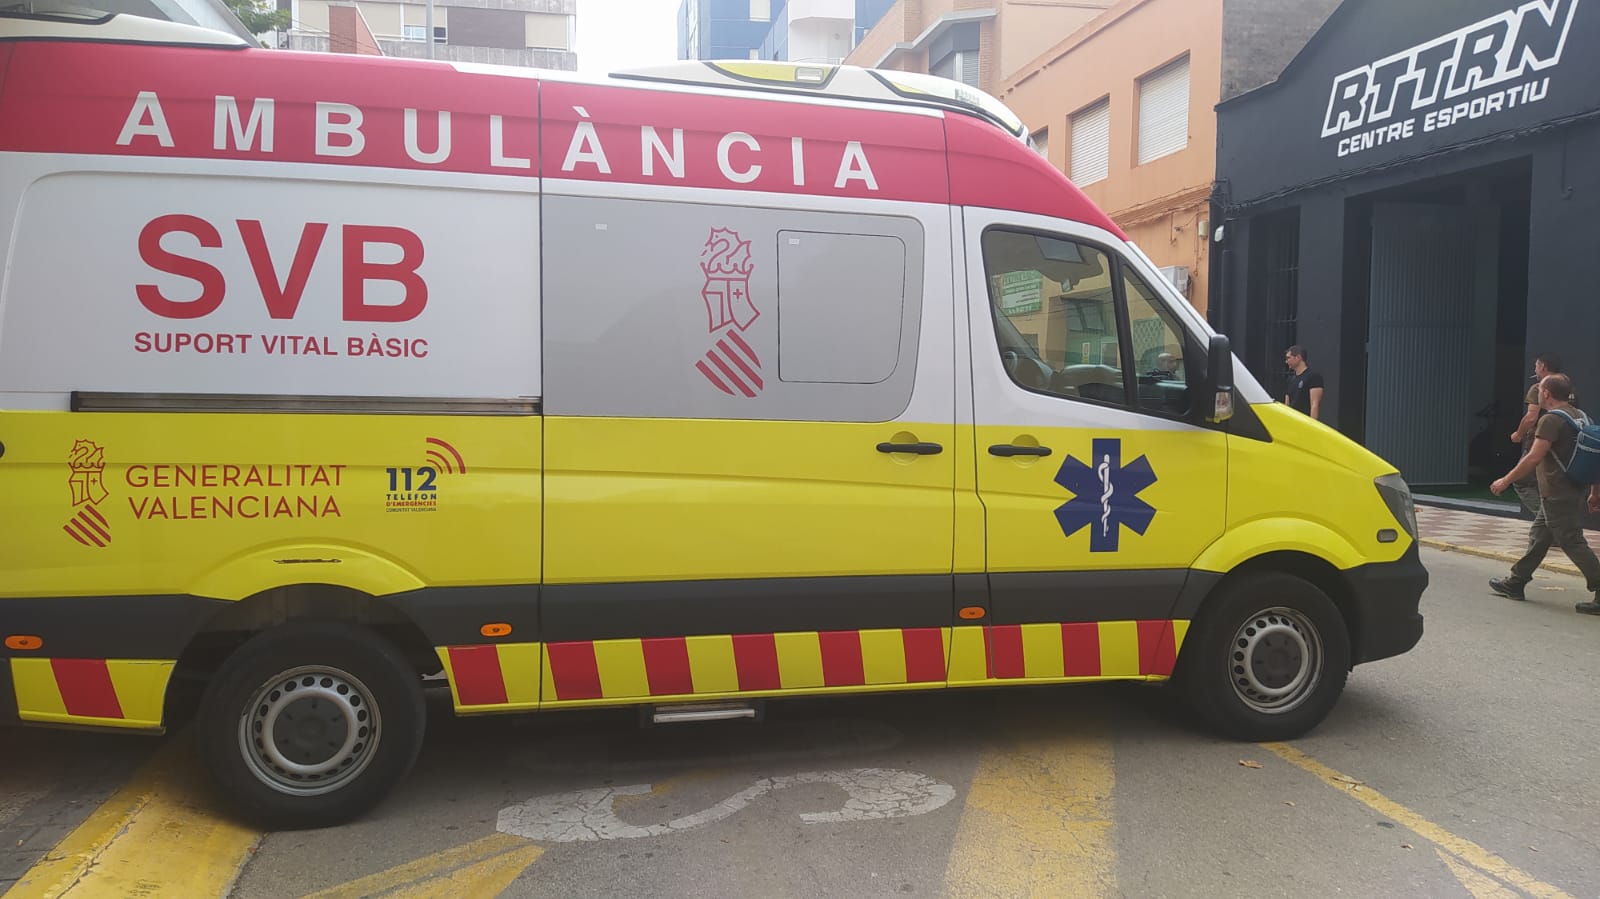 El centro de salud de Tavernes de la Valldigna contará con ambulancia de SVB las 24 horas